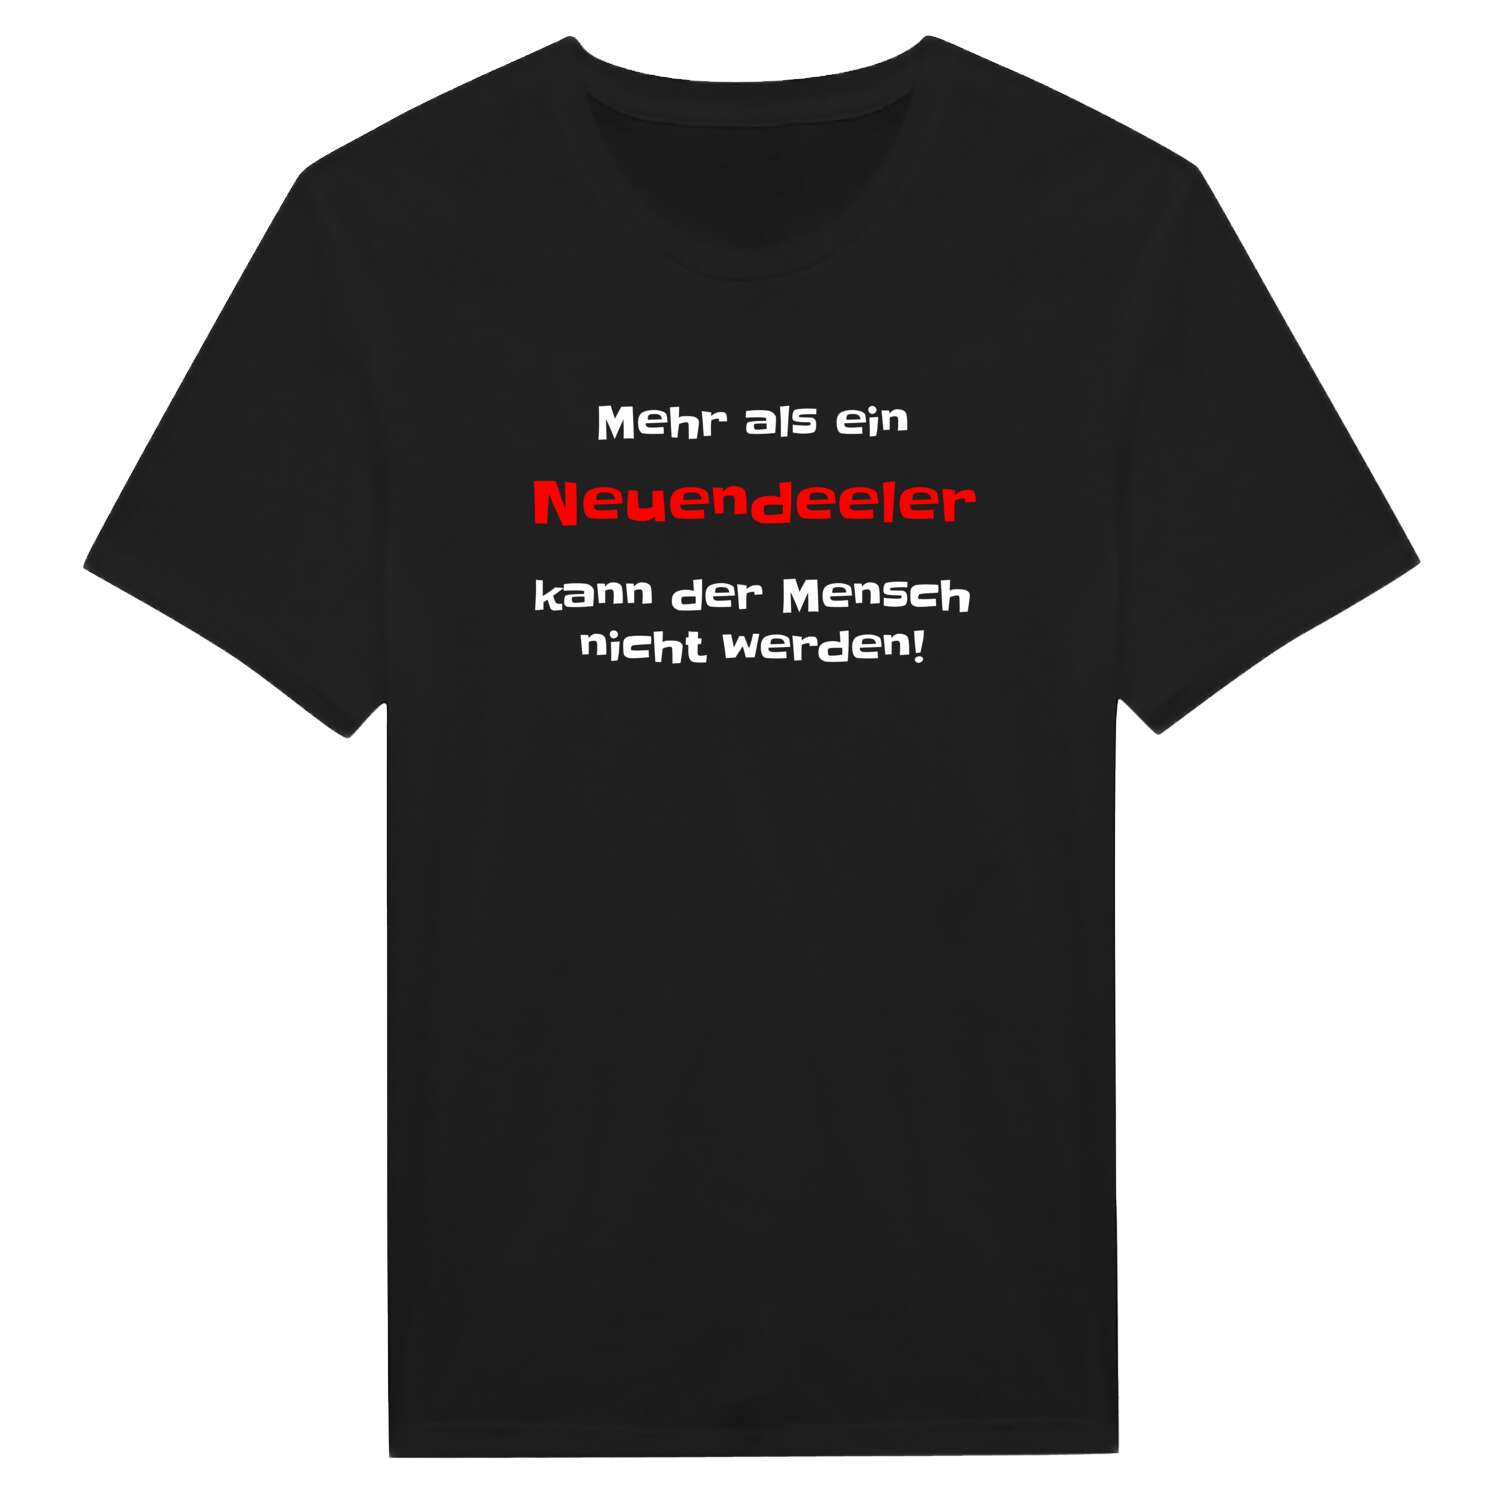 Neuendeel T-Shirt »Mehr als ein«